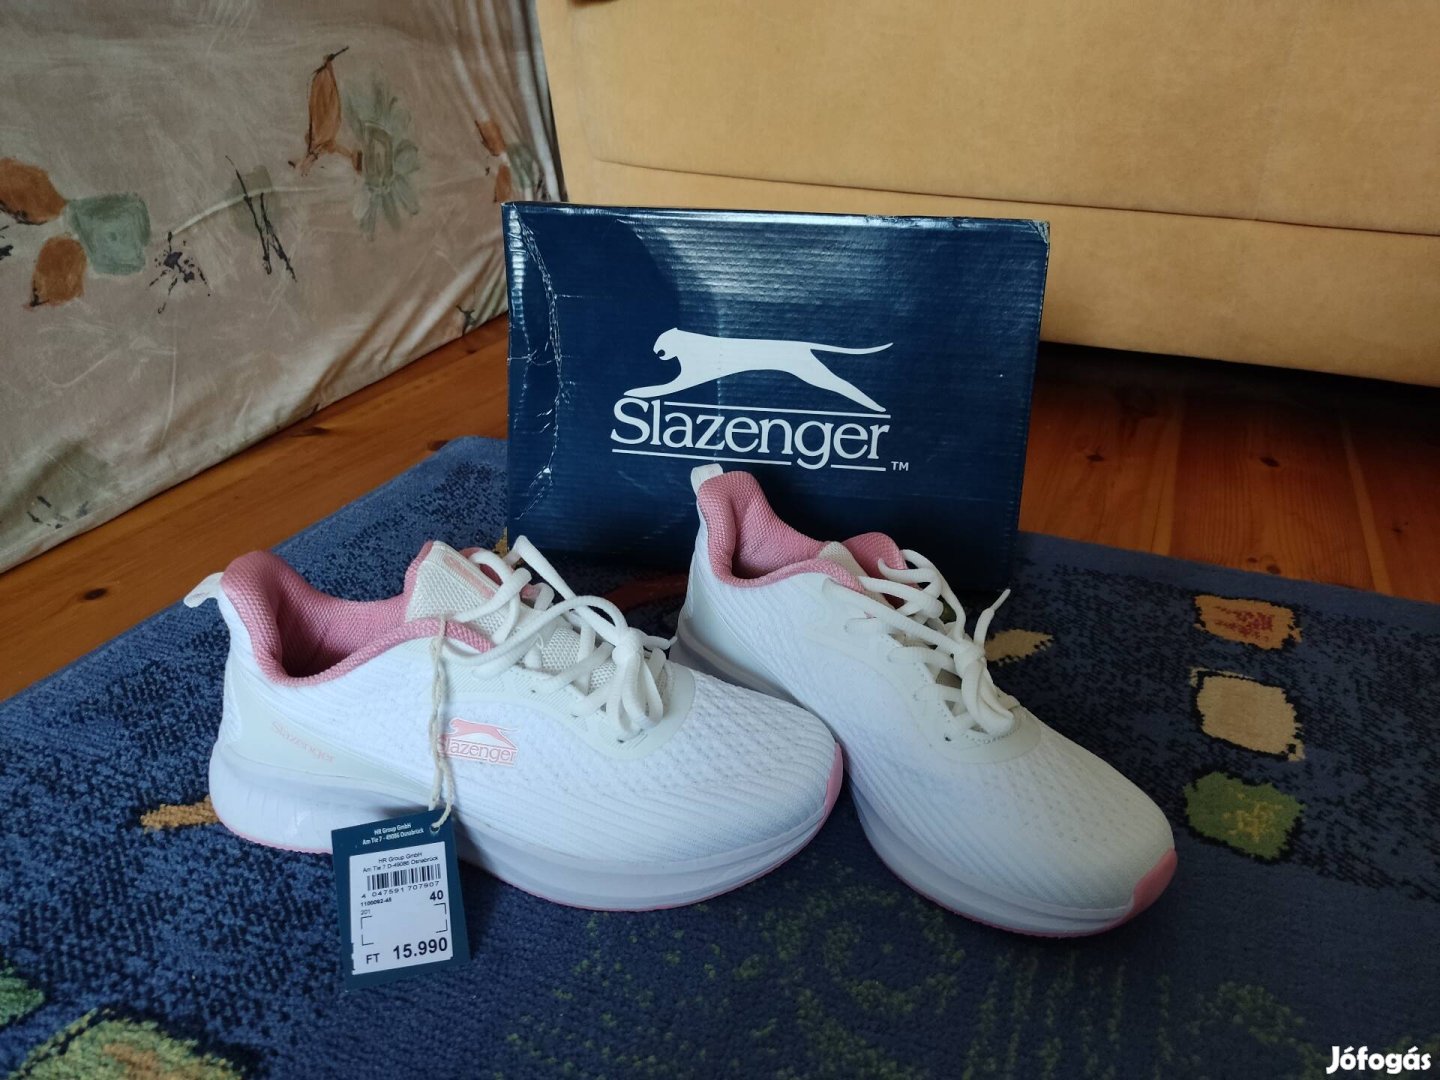 Új Slazenger 40-es női edző cipő 